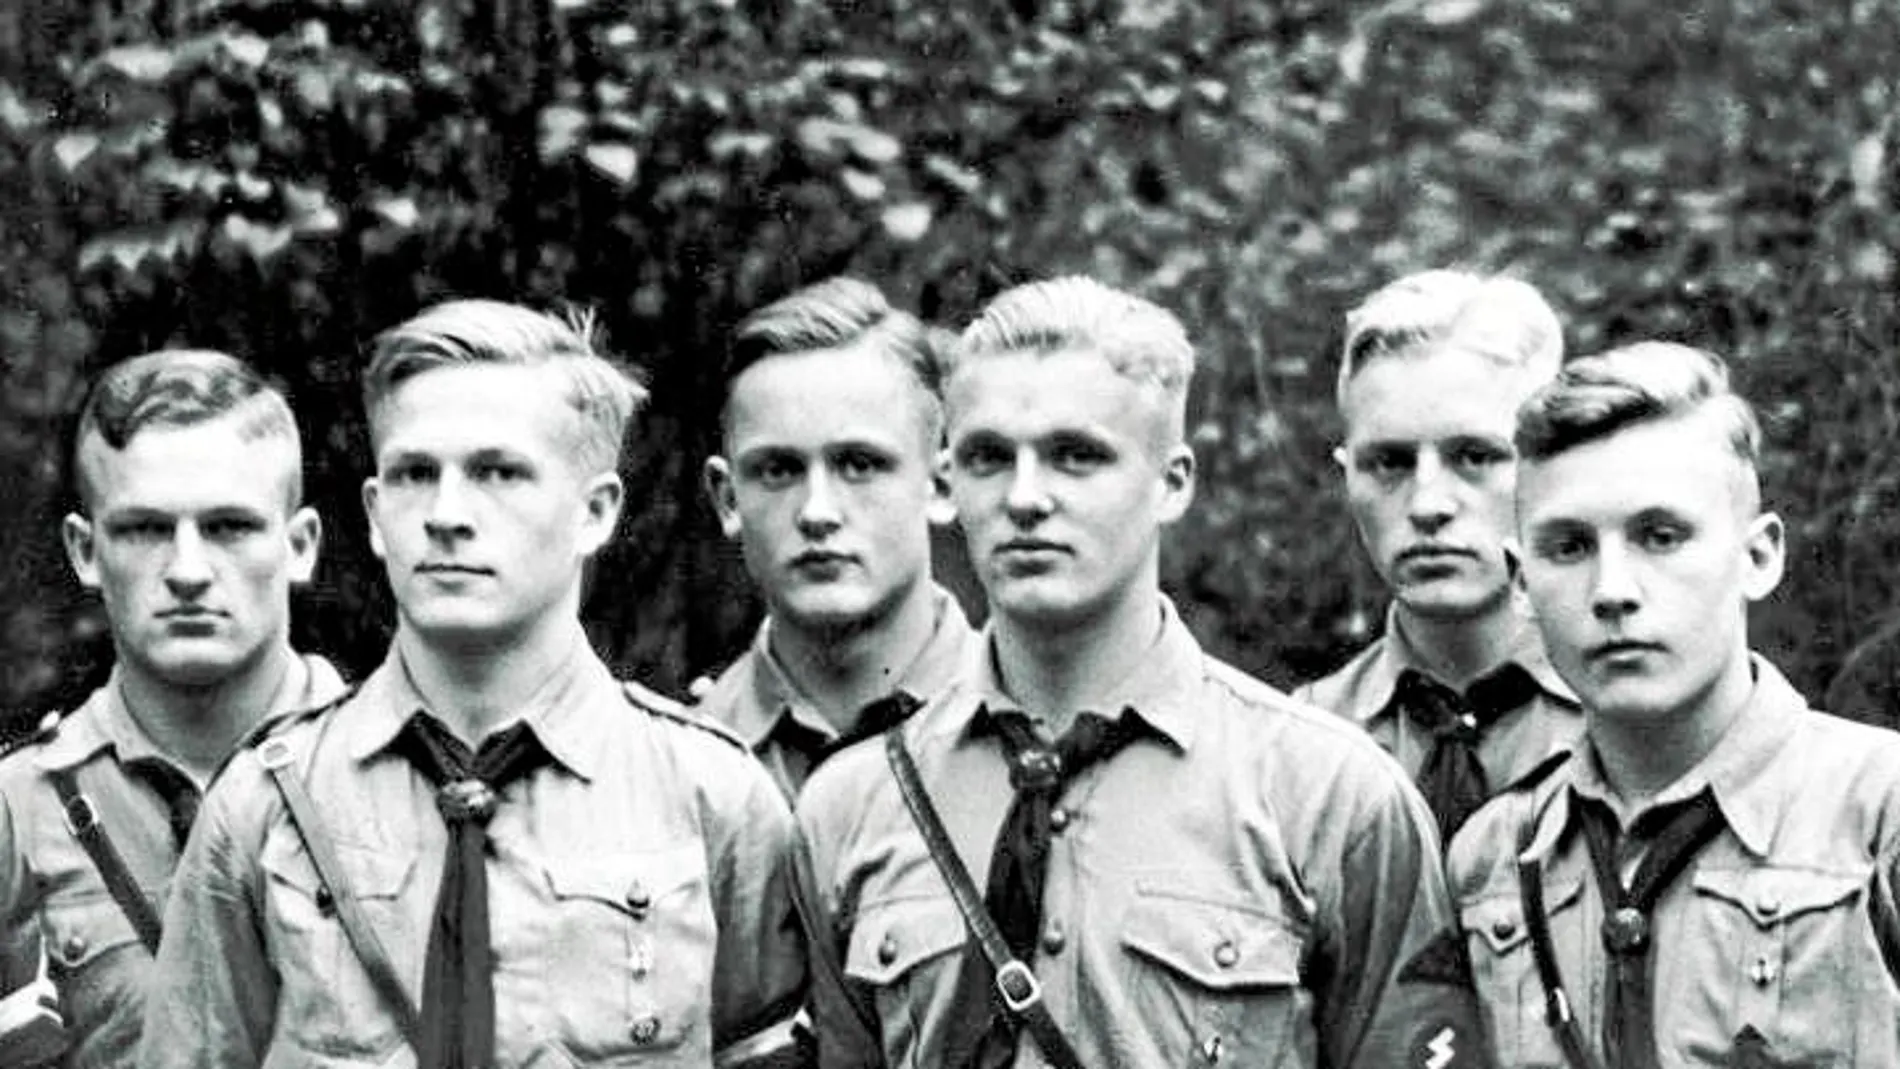 Imagen de las juventudes hitlerianas en el año 1933